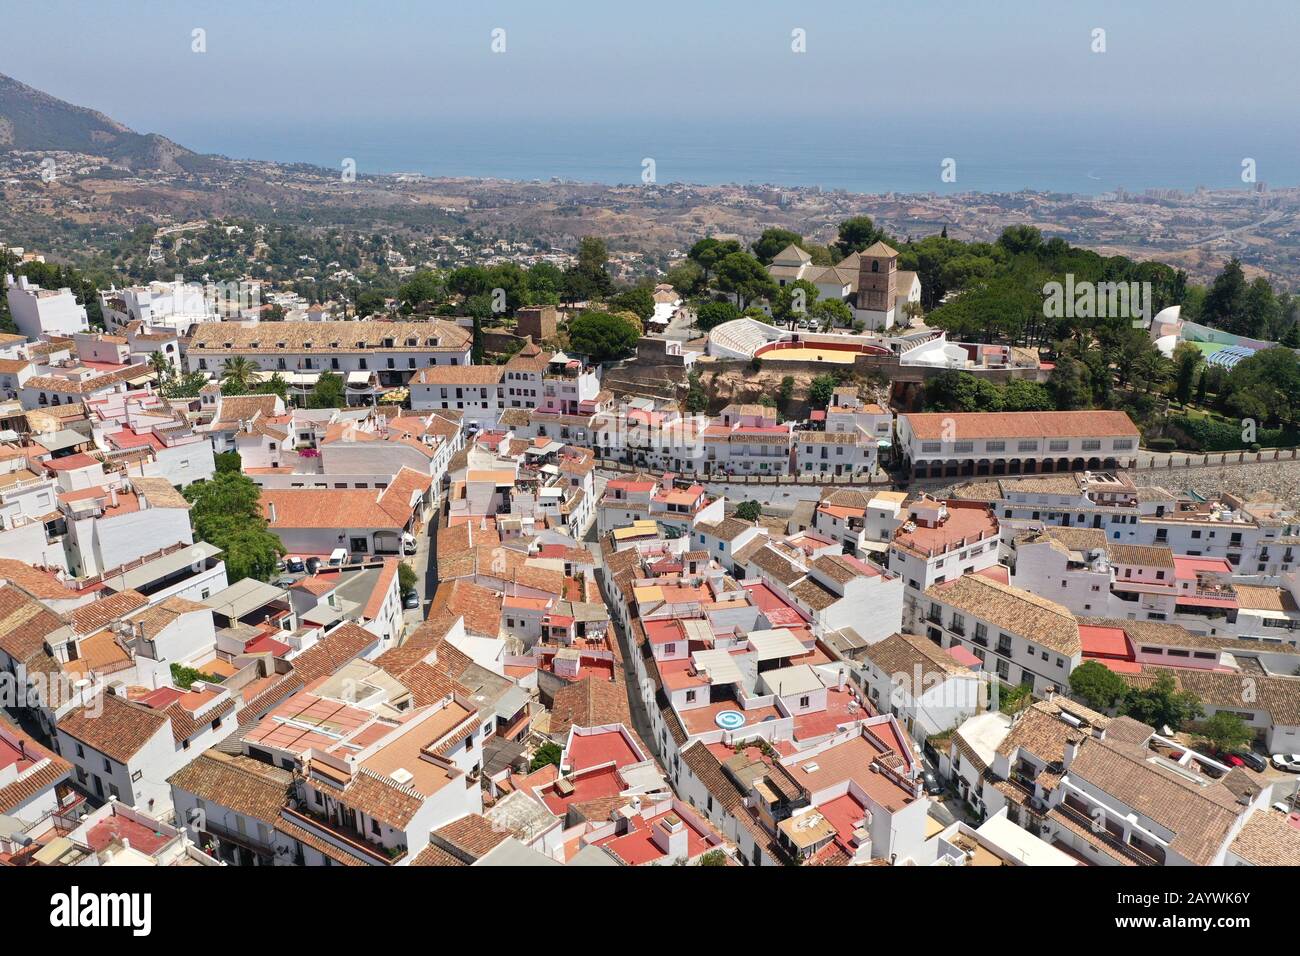 Vista de los tejados de Mijas Pueblo y el paisaje circundante con el mar mediterráneo en el fondo, Costa del Sol, Málaga, España Foto de stock